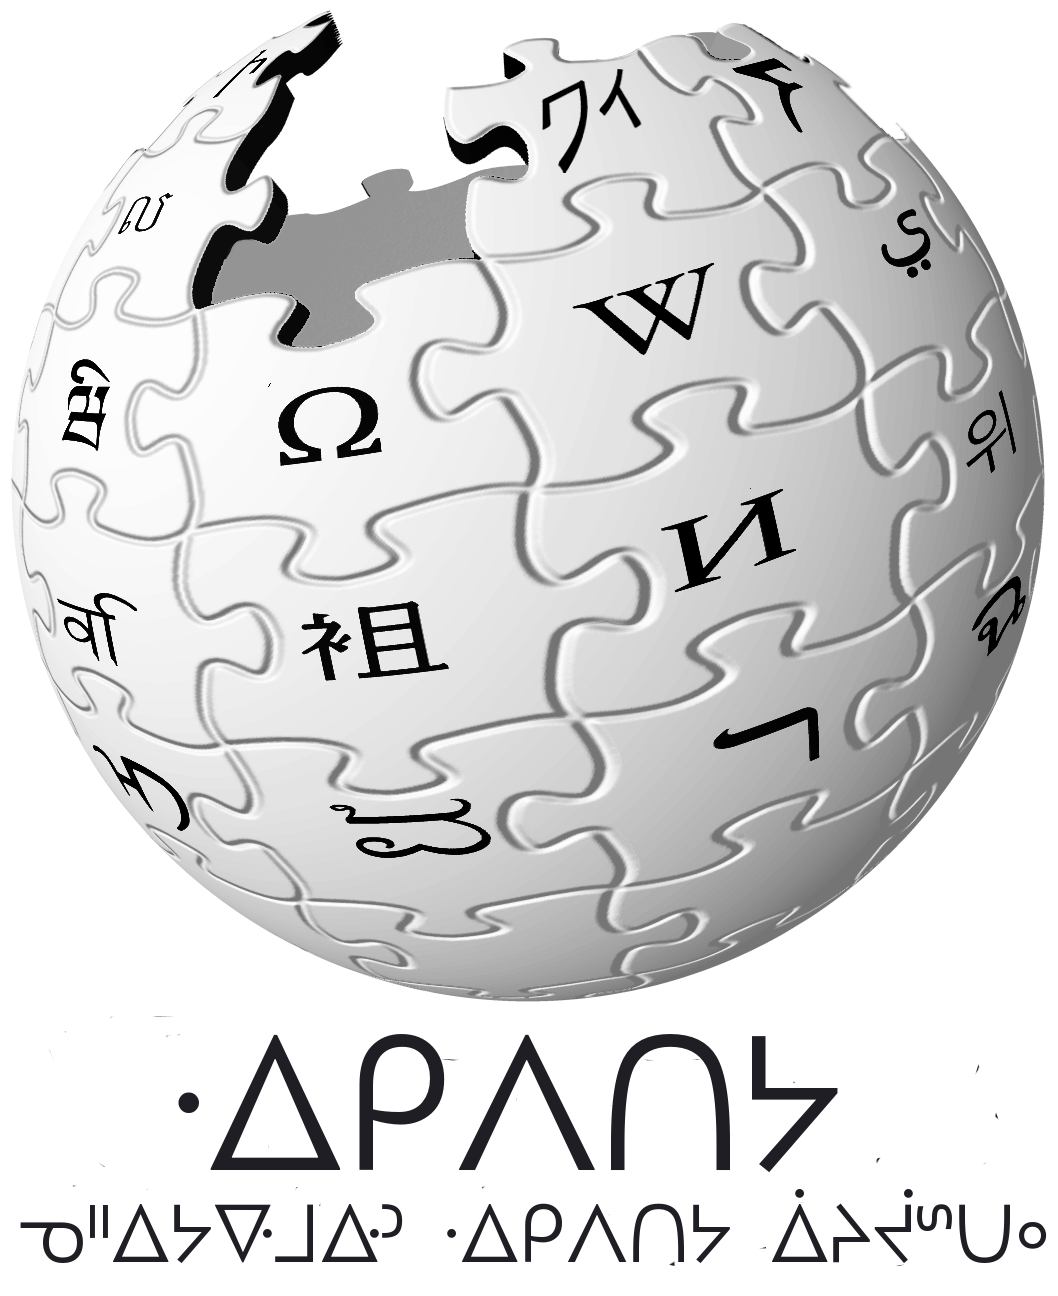 cron - Wikipedia